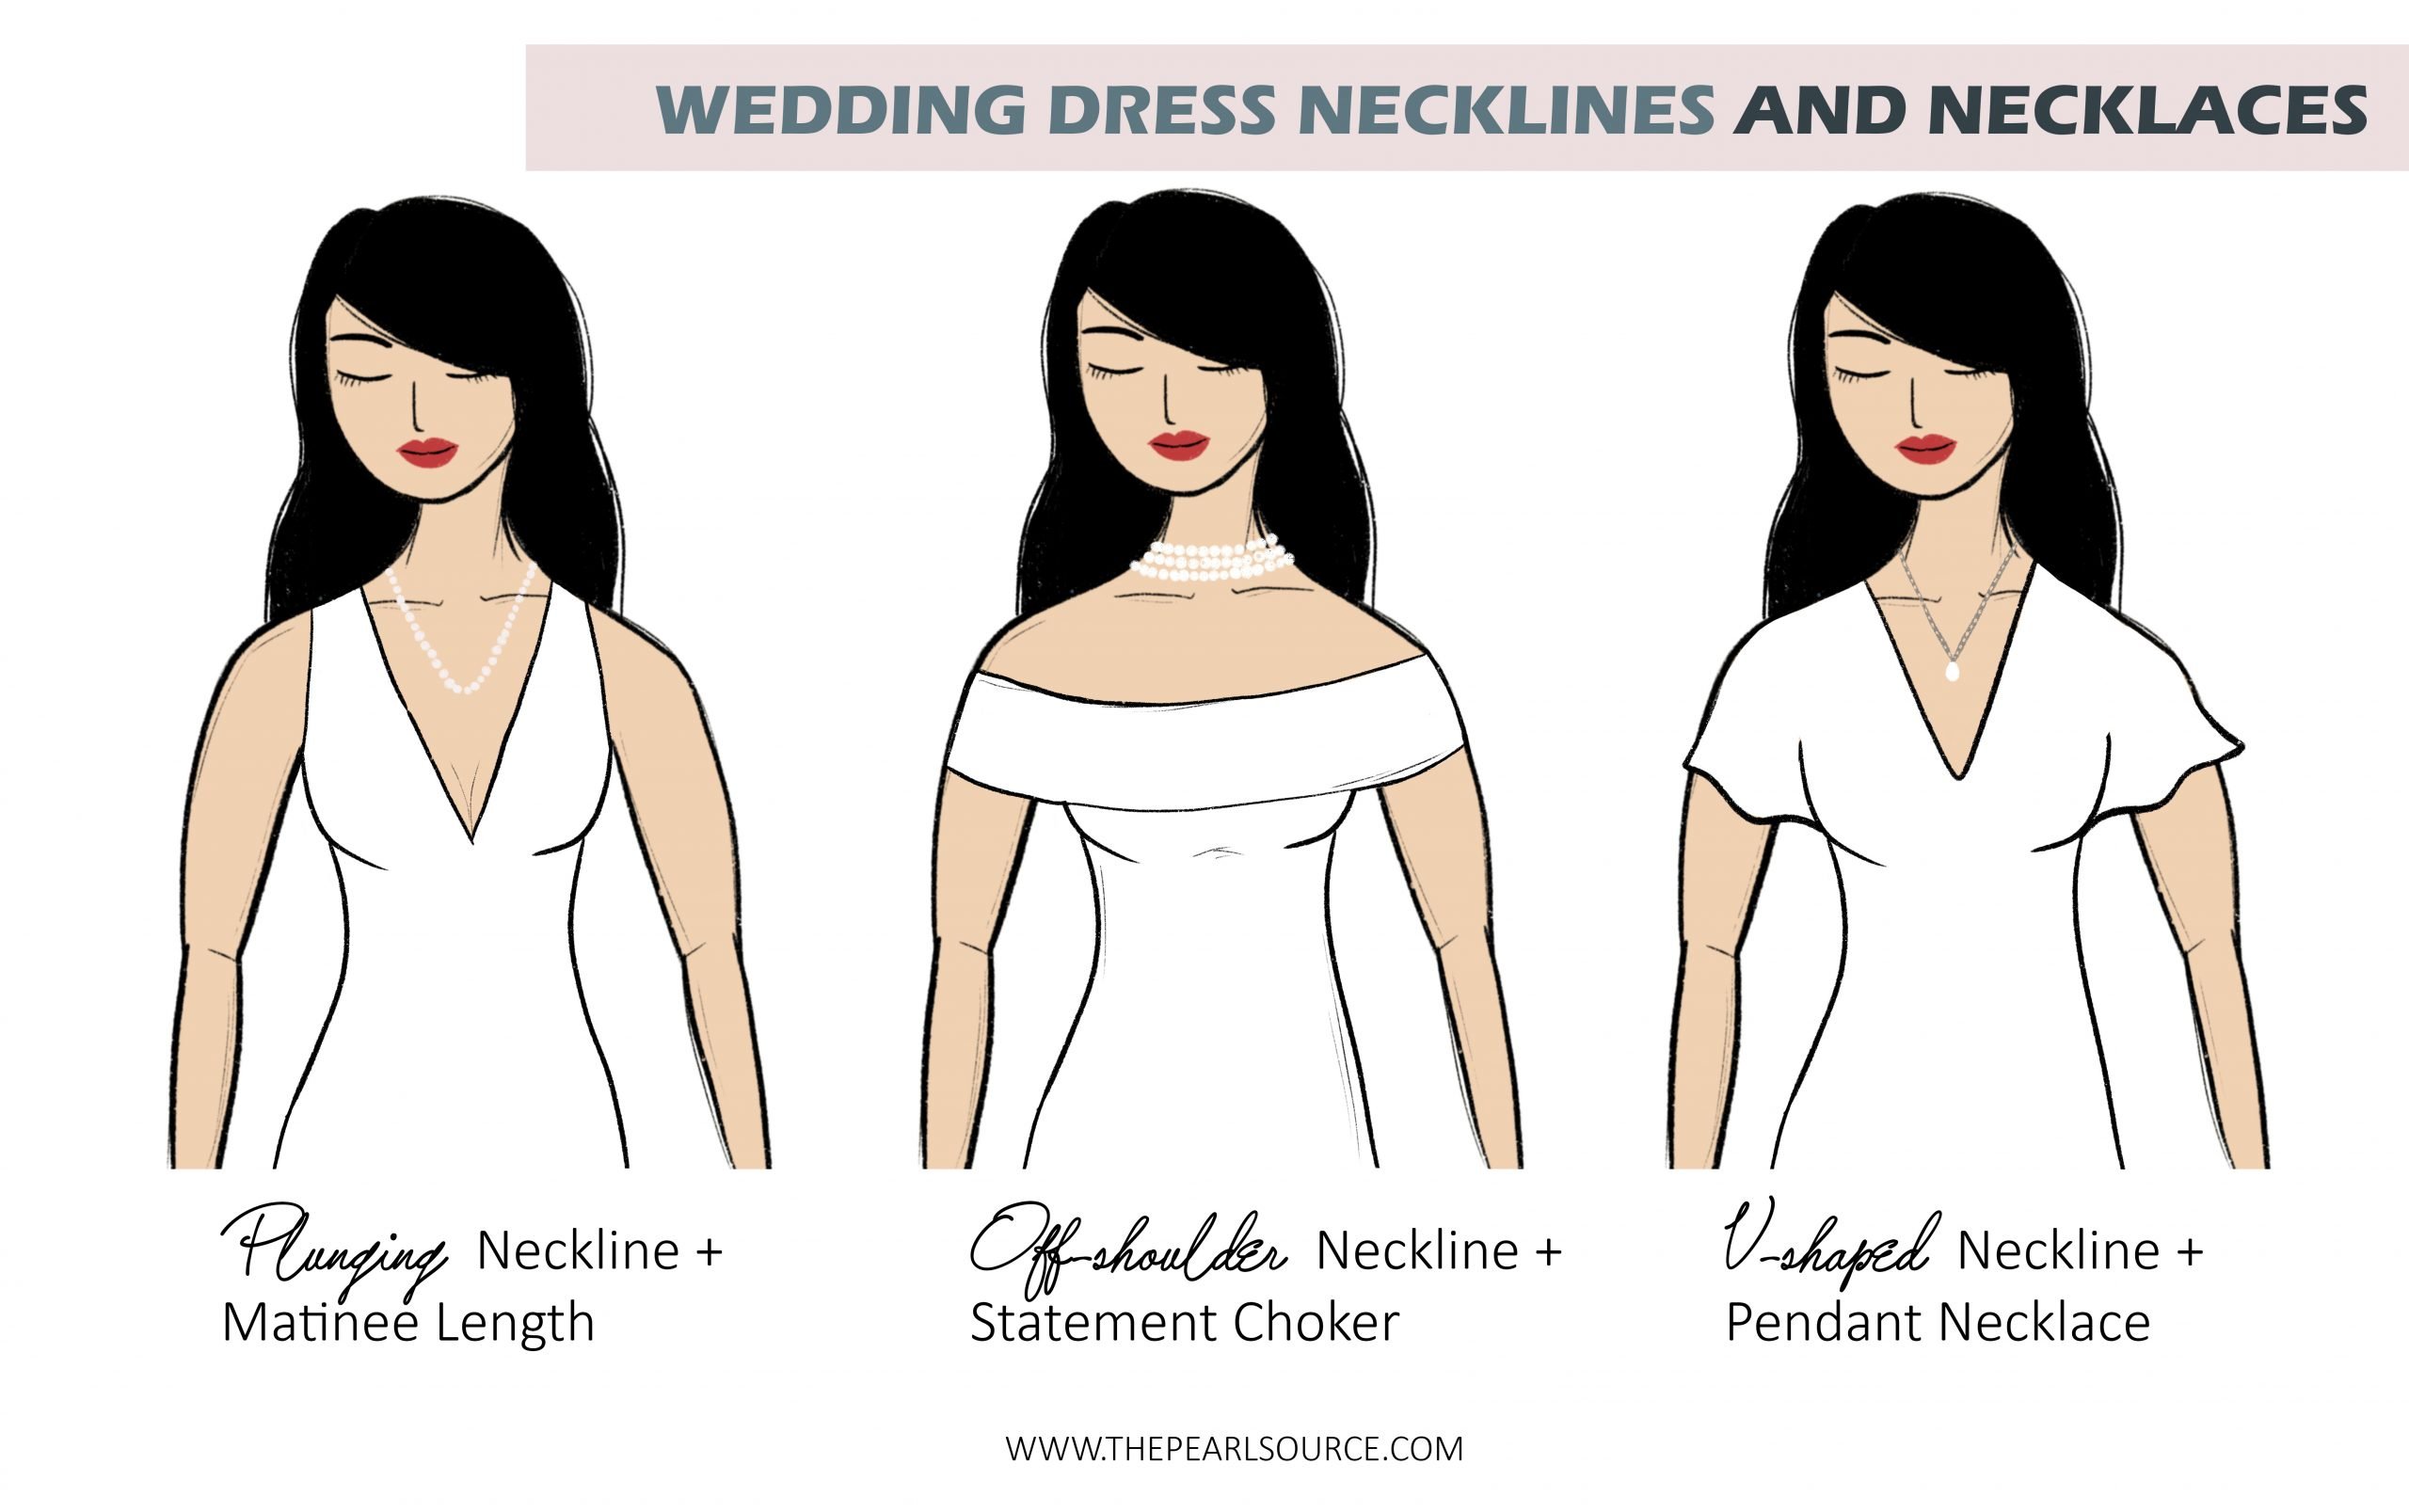 Plunging, Off Shoulder, V-Shaped Necklines and Necklace Length